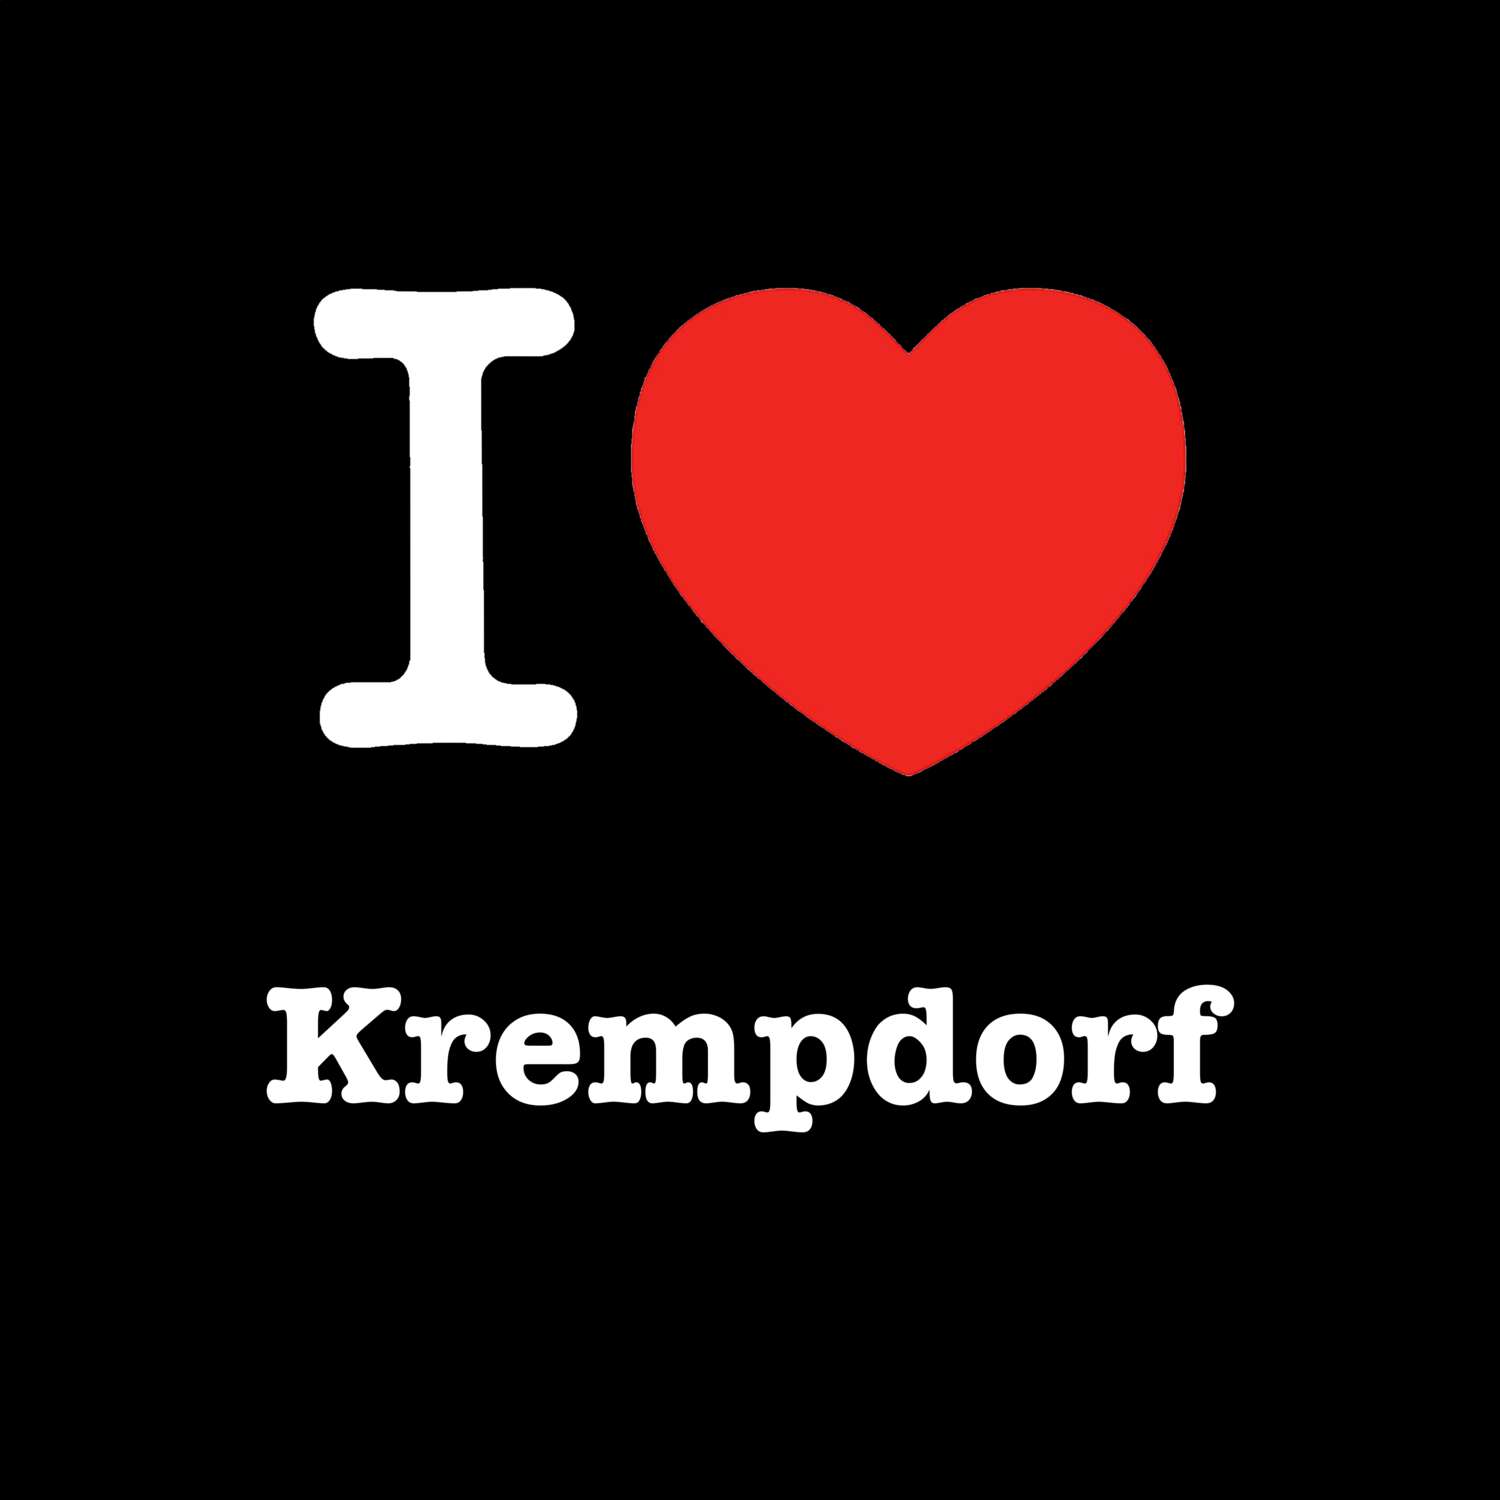 Krempdorf T-Shirt »I love«